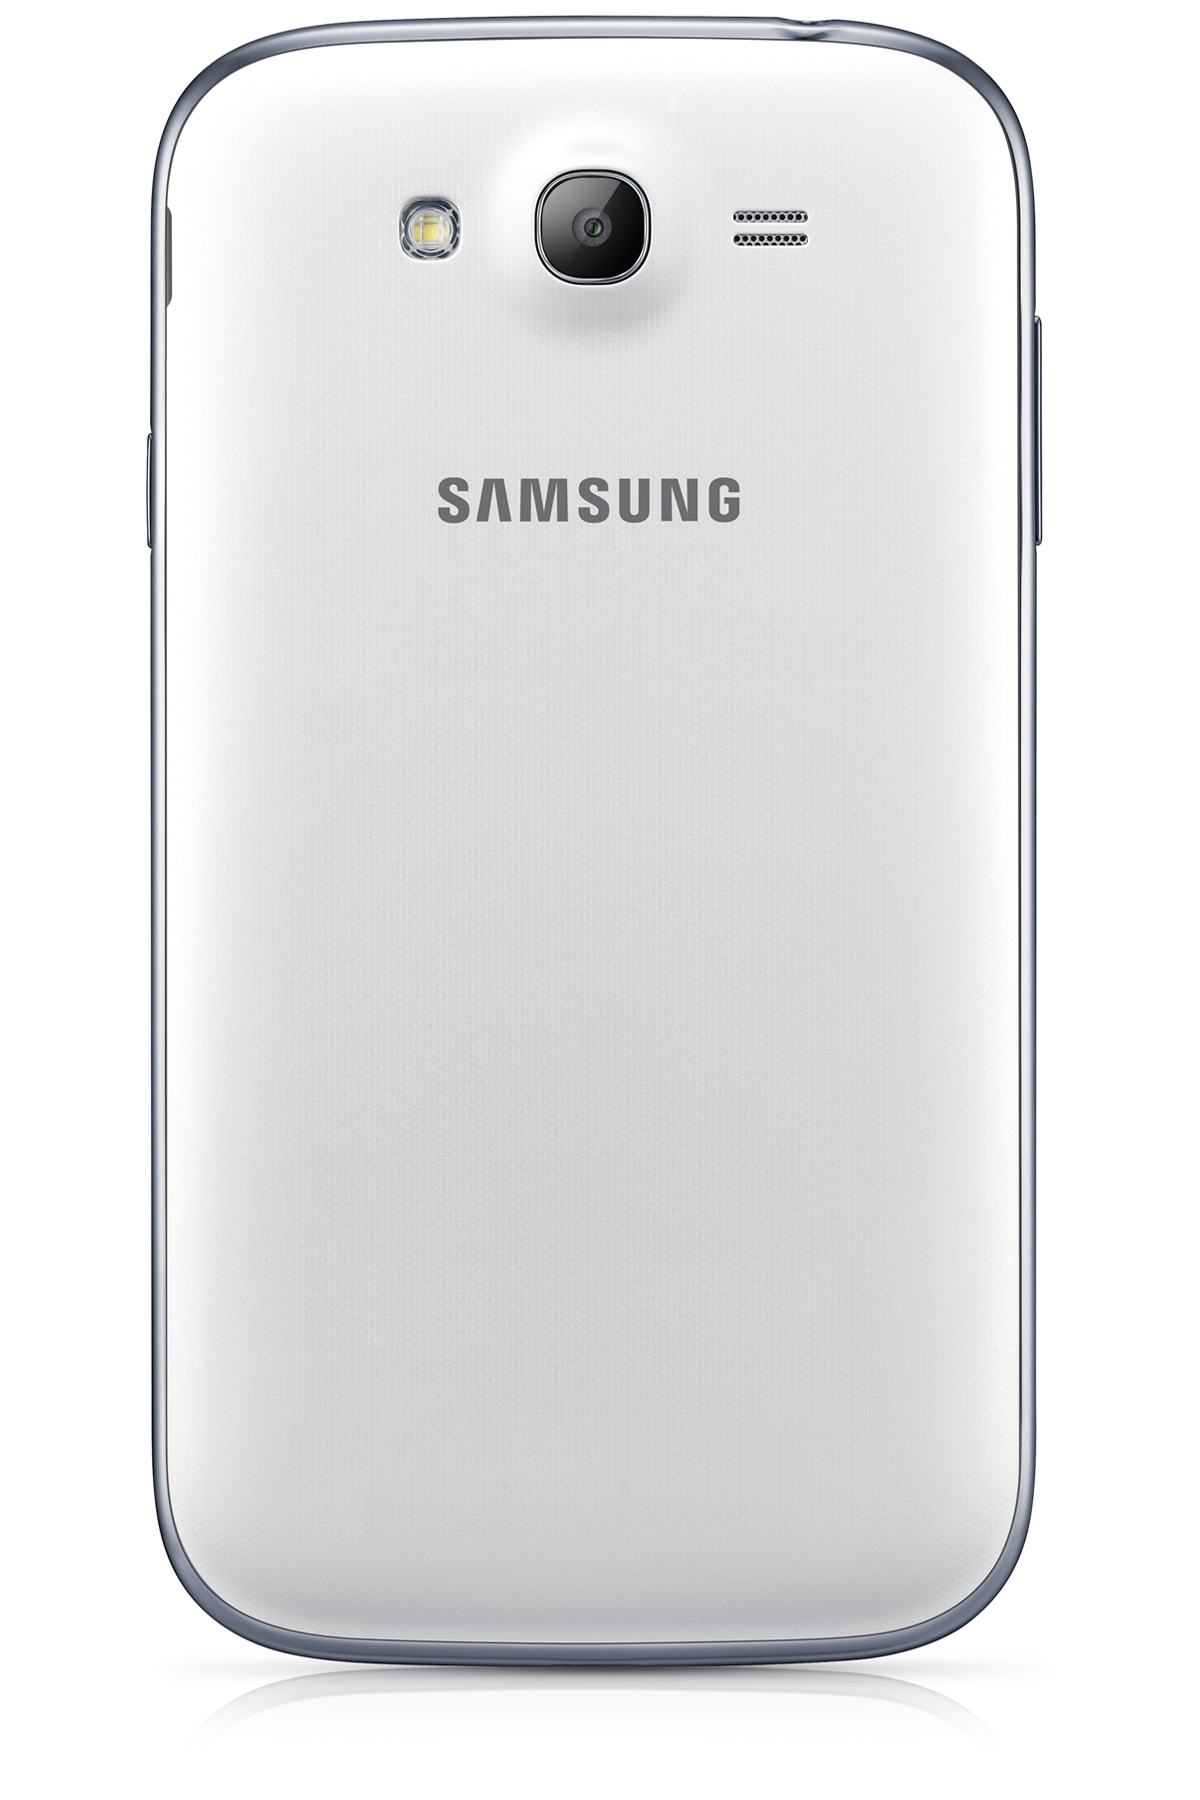 جالكسي جراند بشريحتين صور ومواصفات وسعر جوال سامسونج جلكسي غراند Samsung Galaxy